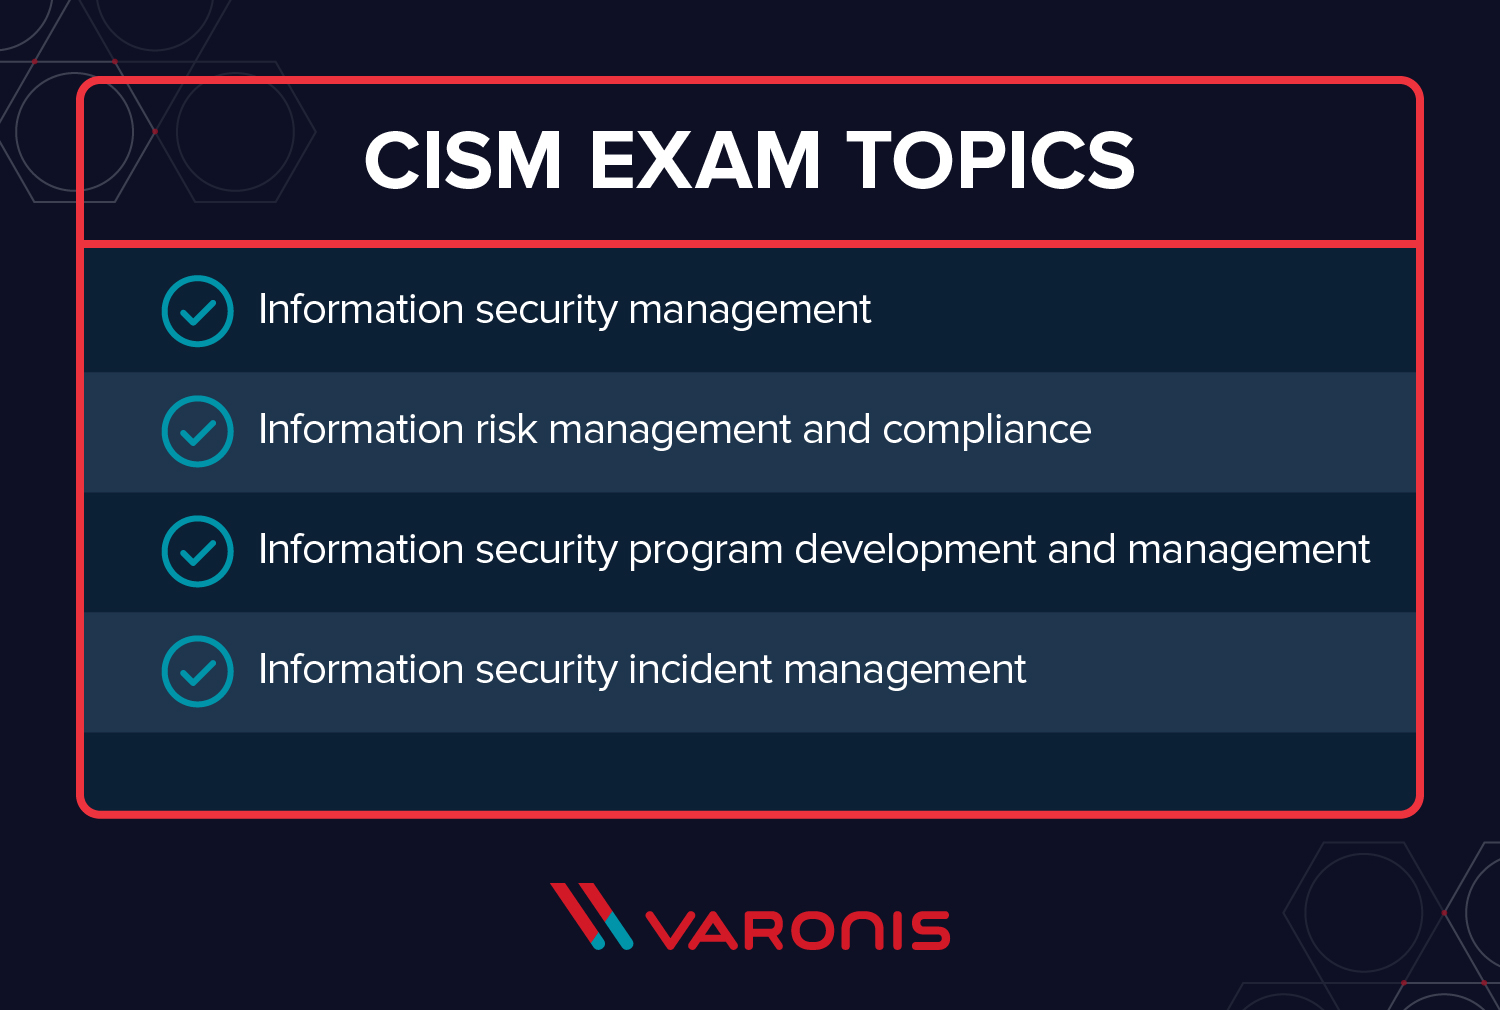 CISM ou CISSP - CISM exam